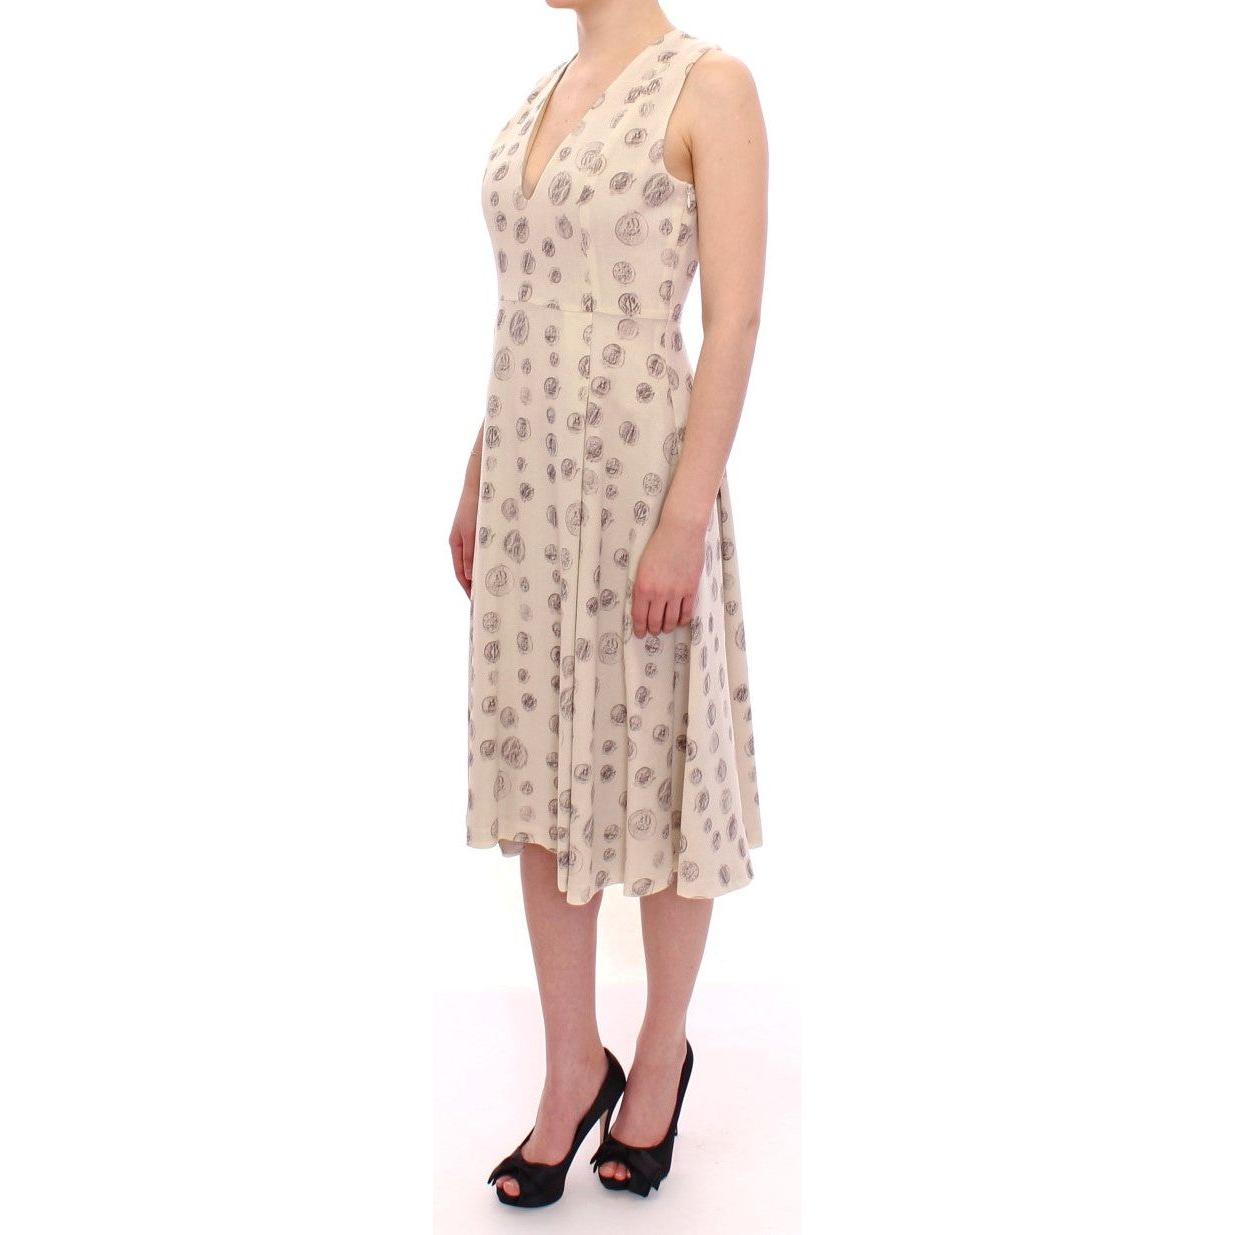 Andrea Incontri | White Printed Shift V-neck Sheath Dress | McRichard Designer Brands